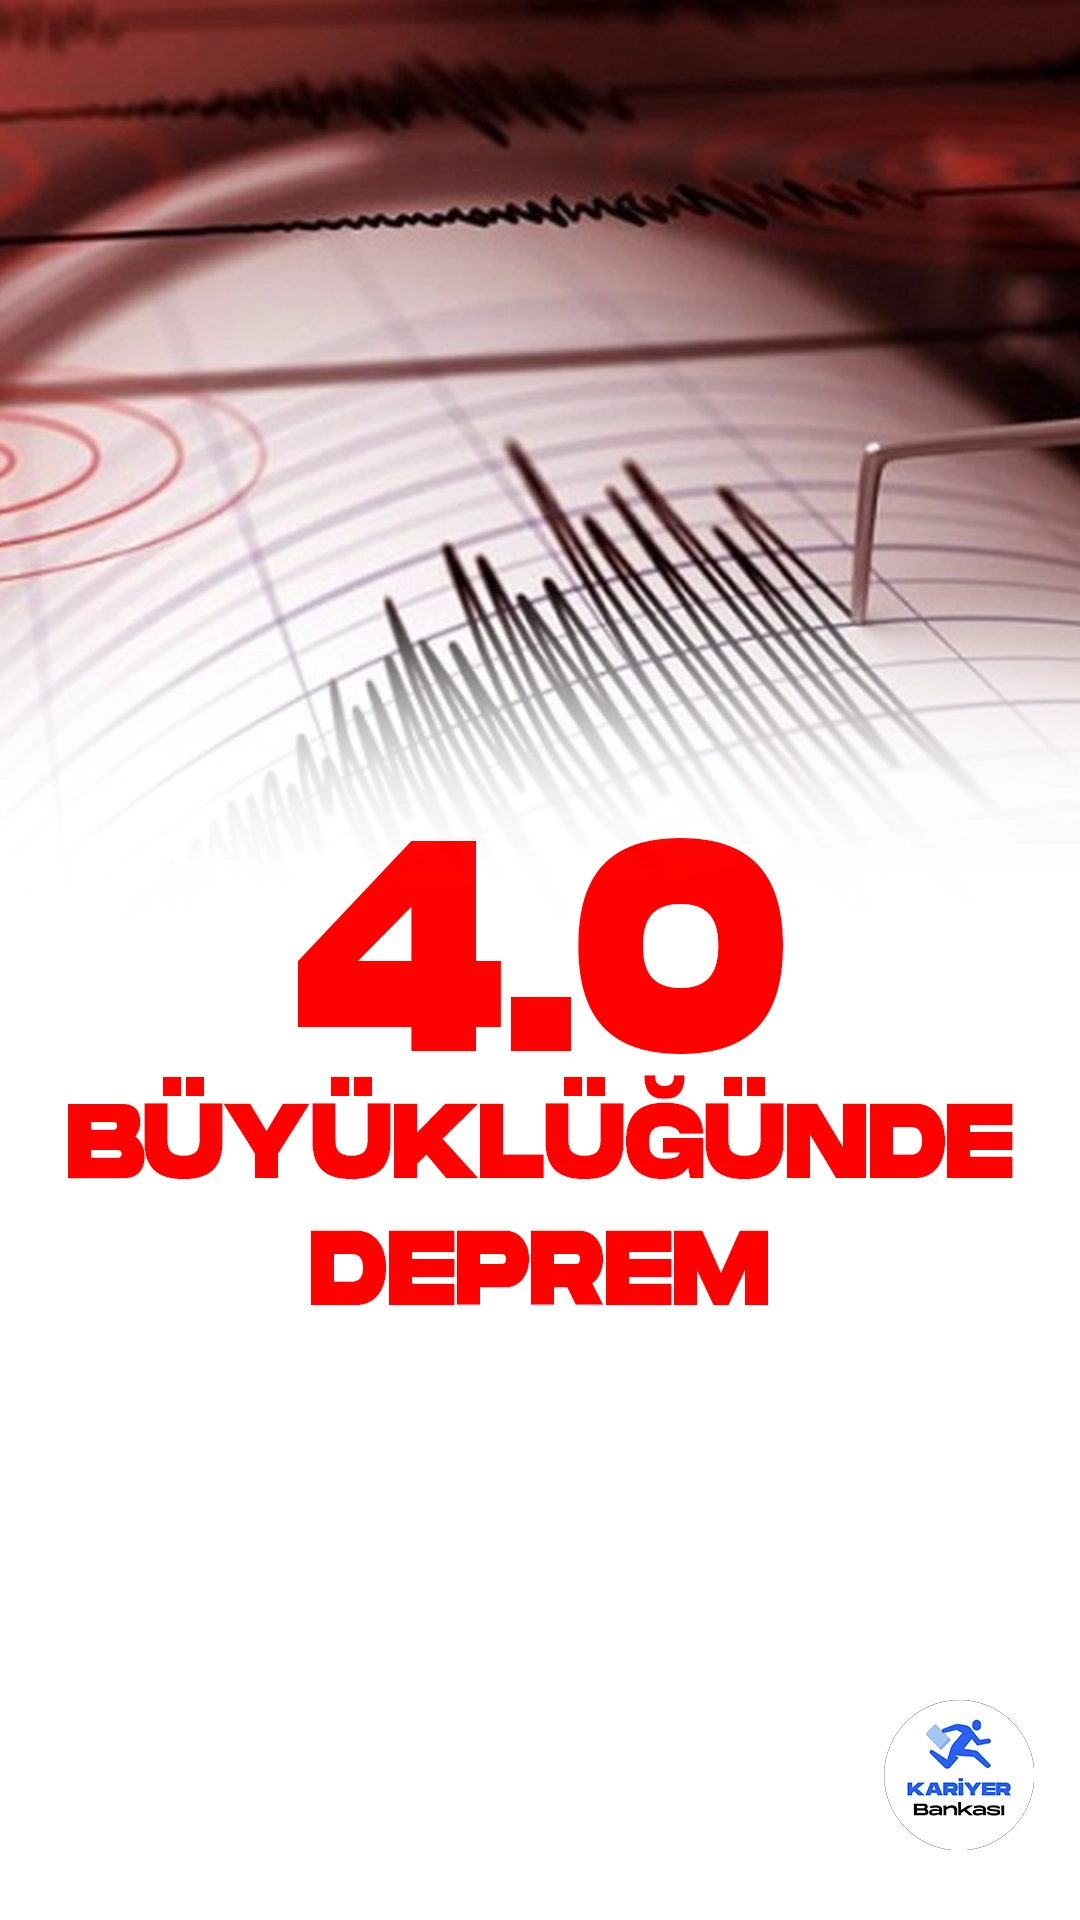 Adana'da 4.0 Büyüklüğünde Deprem Oldu. Boğaziçi Üniversitesi Kandilli Rasathanesi ve Deprem Araştırma Enstitüsü sosyal medya hesabından yayımlanan duyuruda, Adana'da 4.0 büyüklüğünde deprem meydana geldiği aktarıldı.